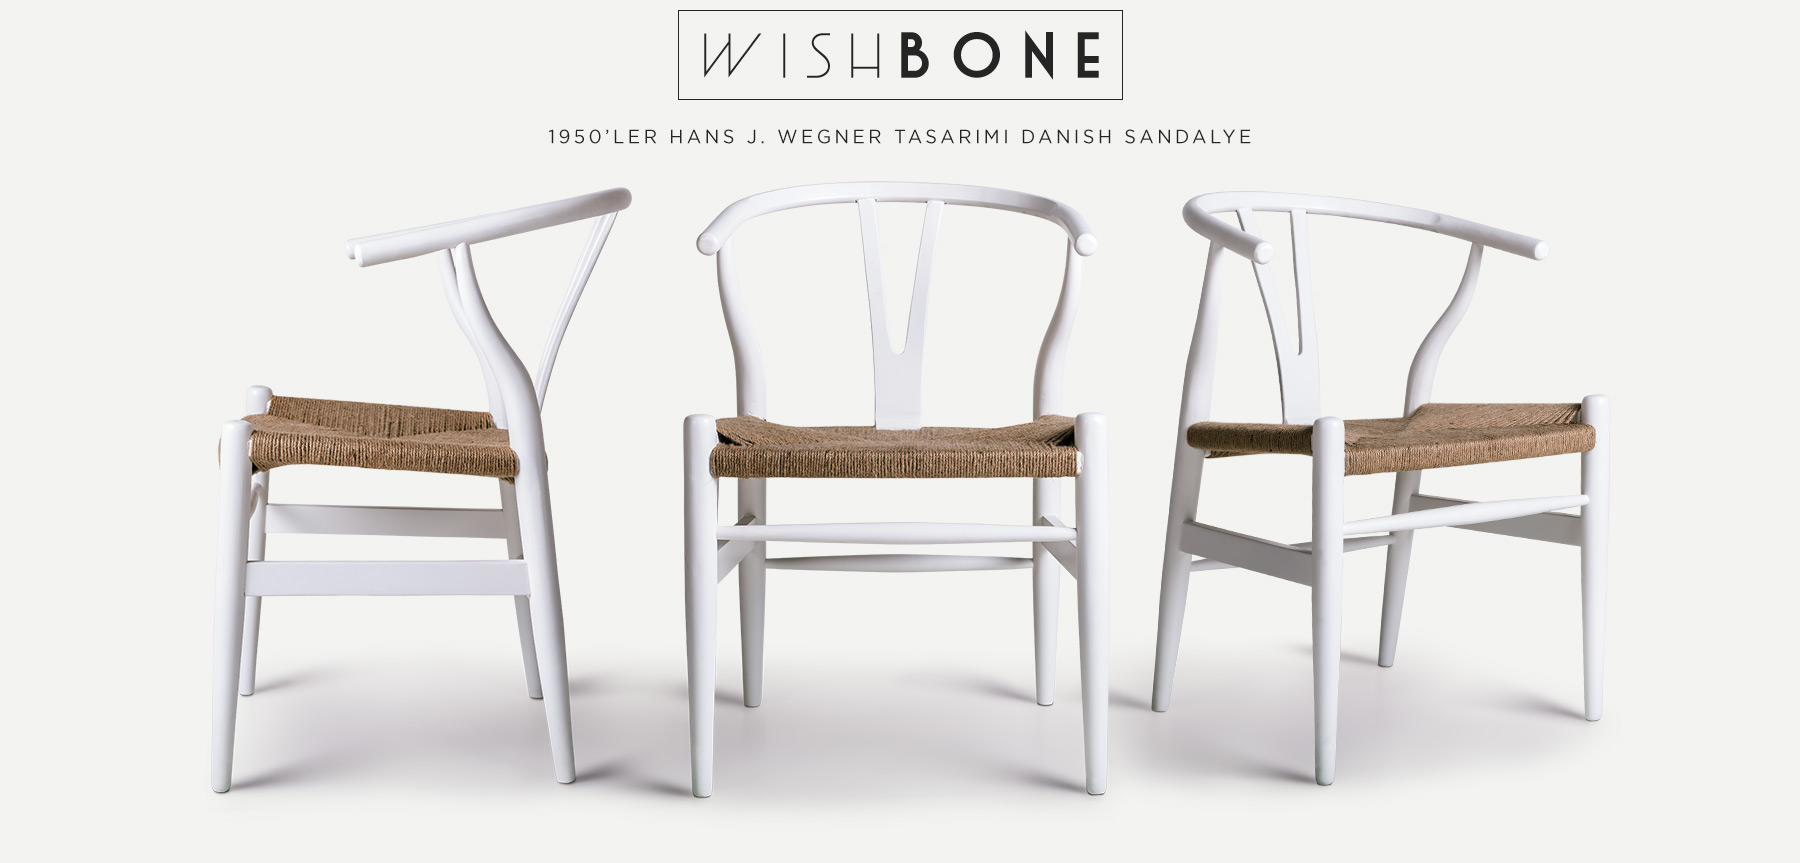 h. wegner beyaz wıshbone danısh™ sandalye'in resmi